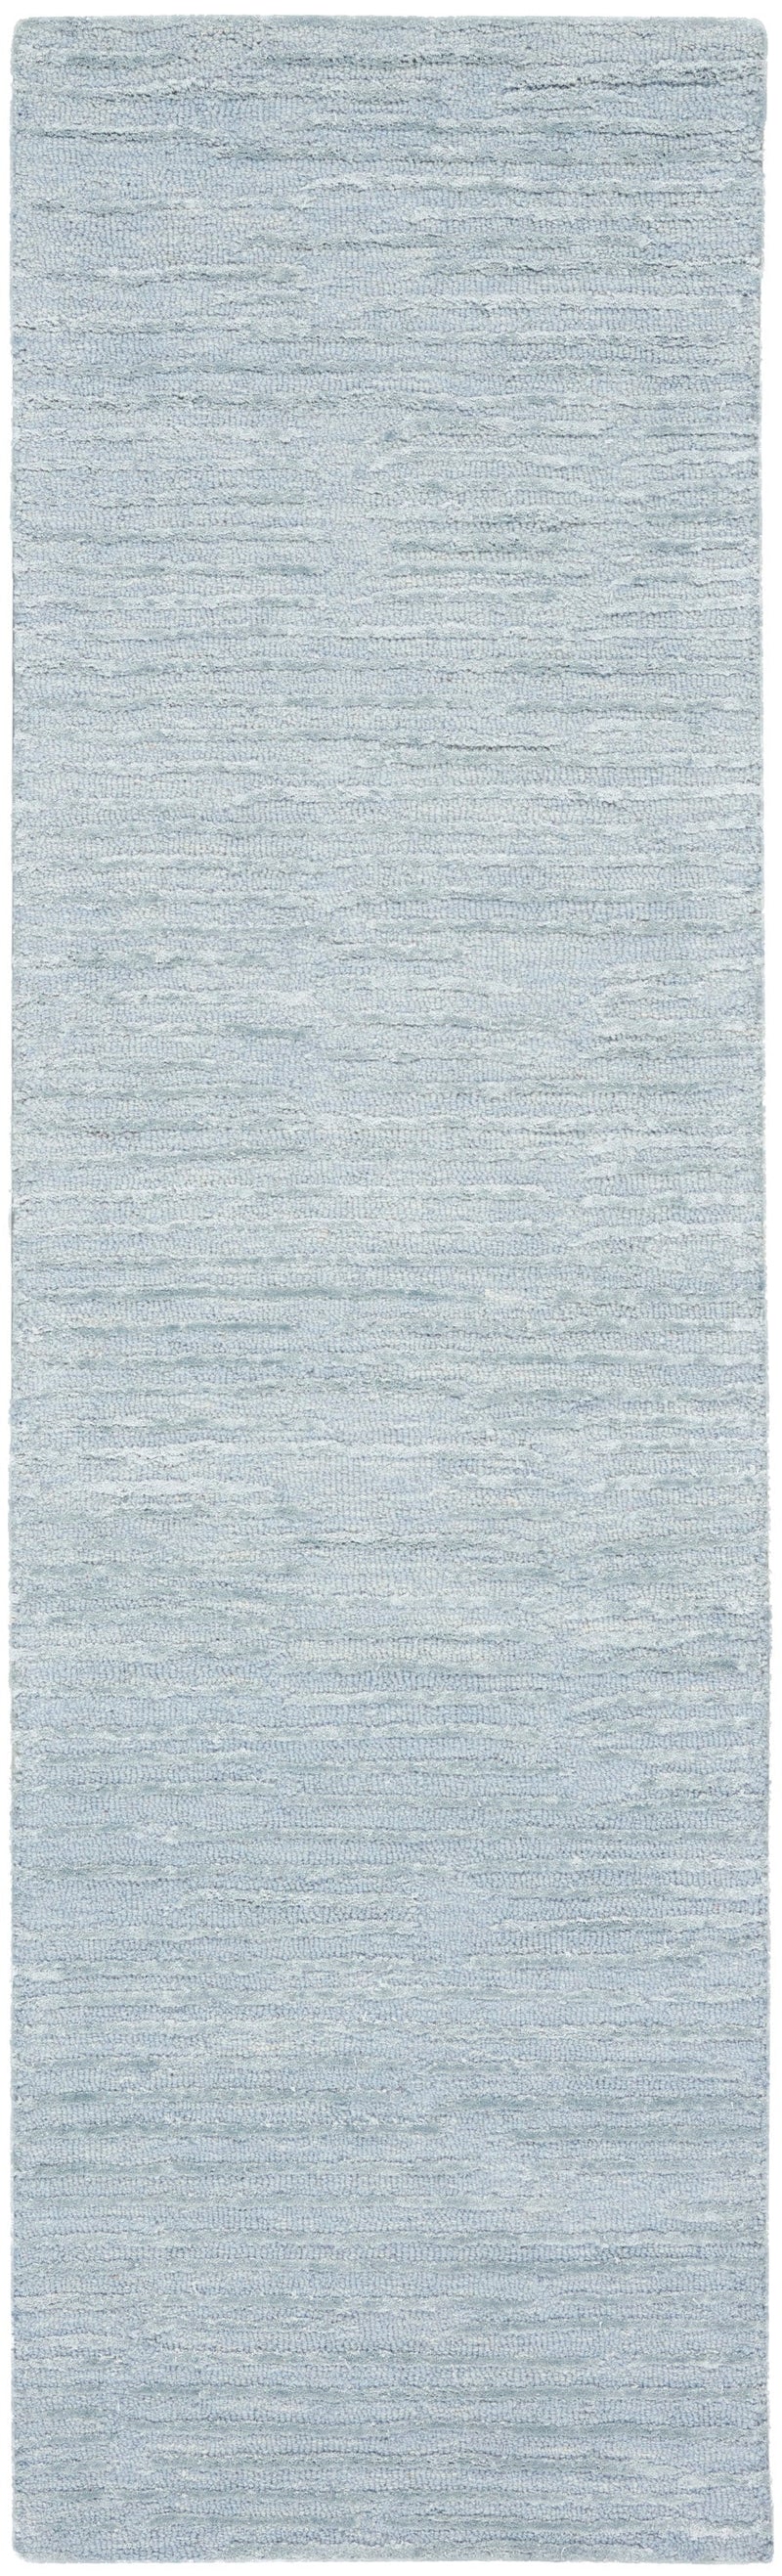 media image for ck010 linear handmade light blue rug by nourison 99446879950 redo 2 266